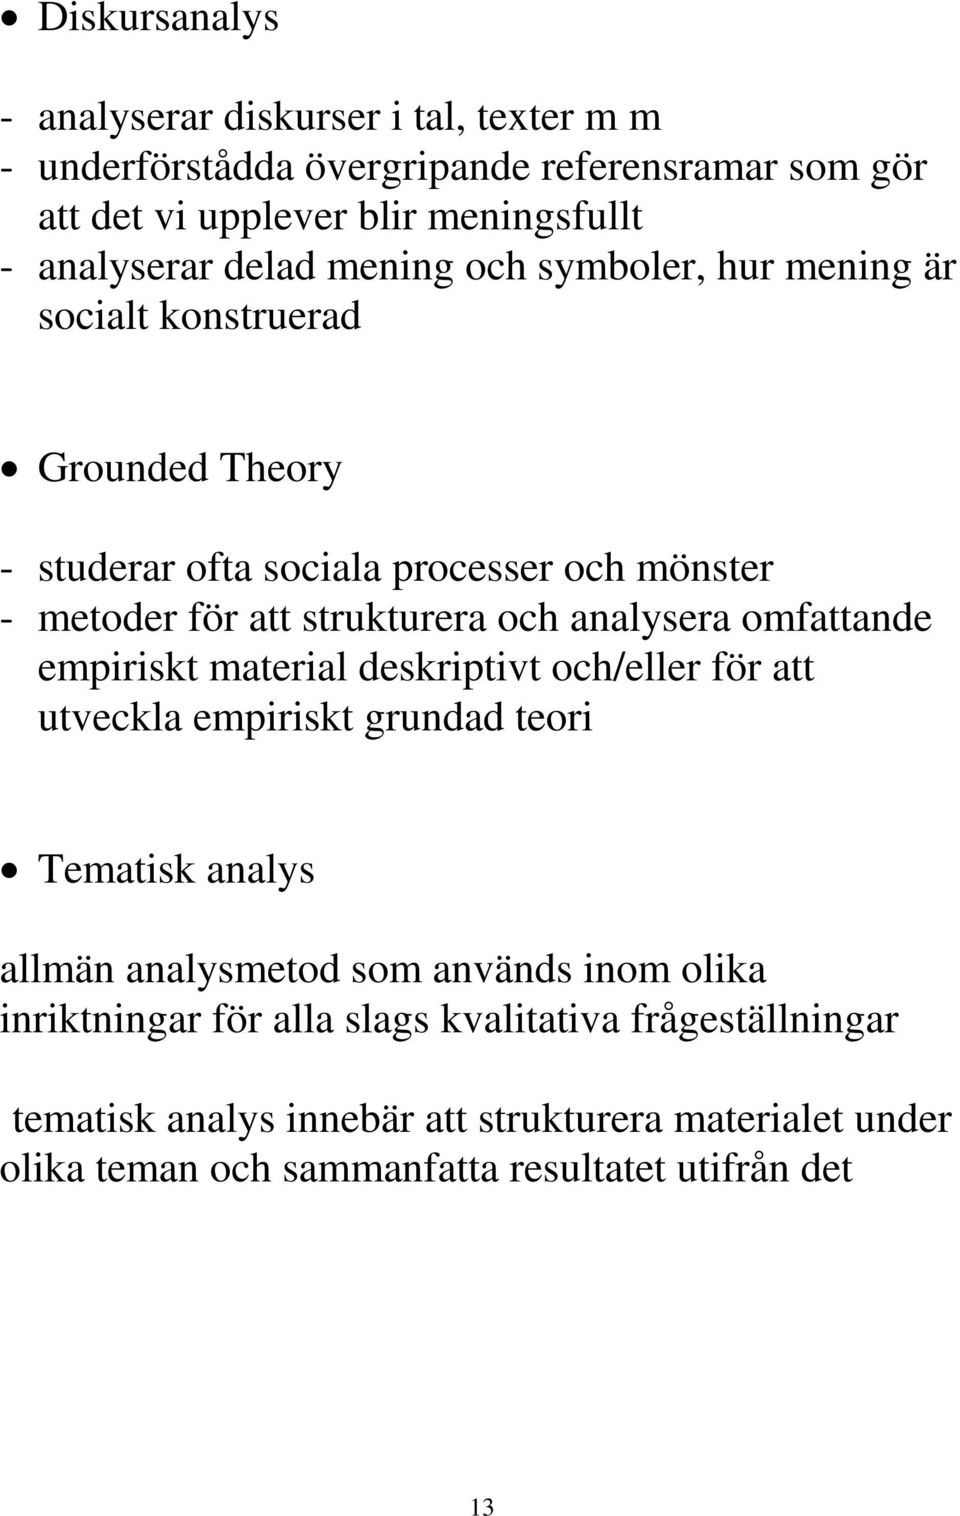 analysera omfattande empiriskt material deskriptivt och/eller för att utveckla empiriskt grundad teori Tematisk analys allmän analysmetod som används inom olika